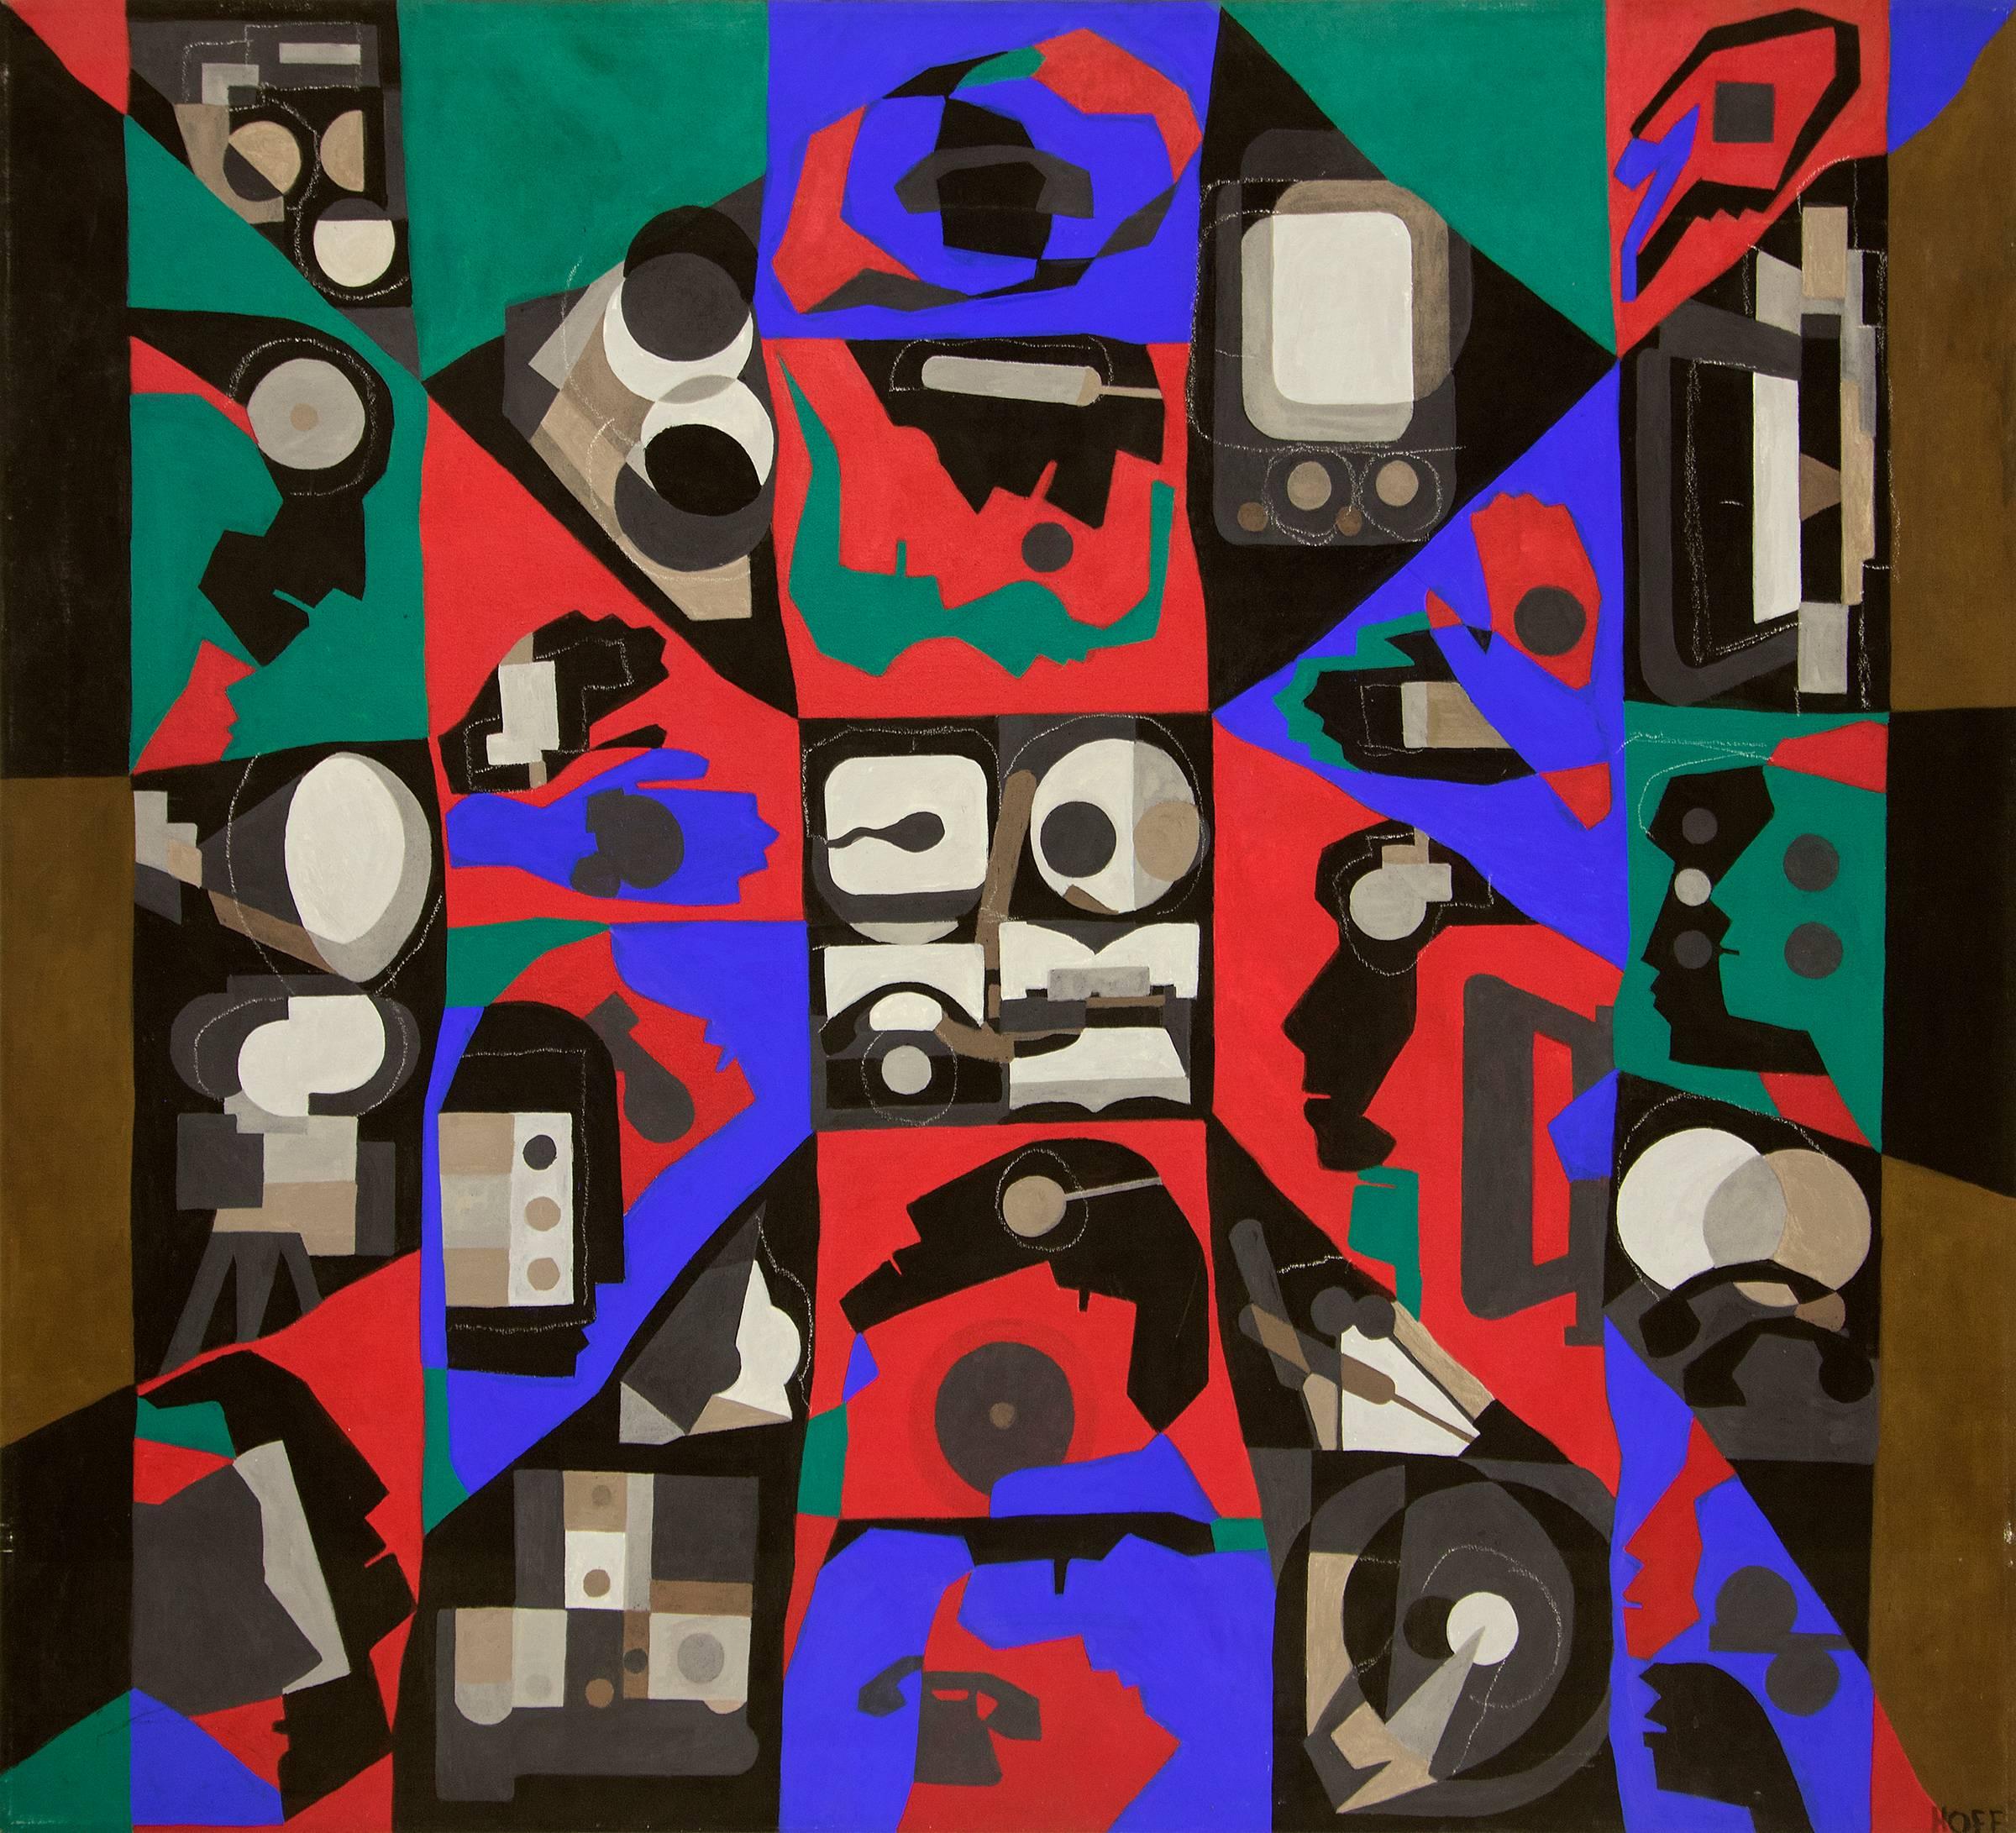 Abstrakte Acryl- und Stoffcollage auf Leinwand in Lila, Rot, Grün, Braun und Schwarz, signiert von Margo Hoff (1910-2008), gemalt 1974. Ungerahmte, gewickelte Leinwand mit den Maßen 54 x 60 x 3⁄4 Zoll. 

Provenienz: Nachlass des Künstlers, Margo